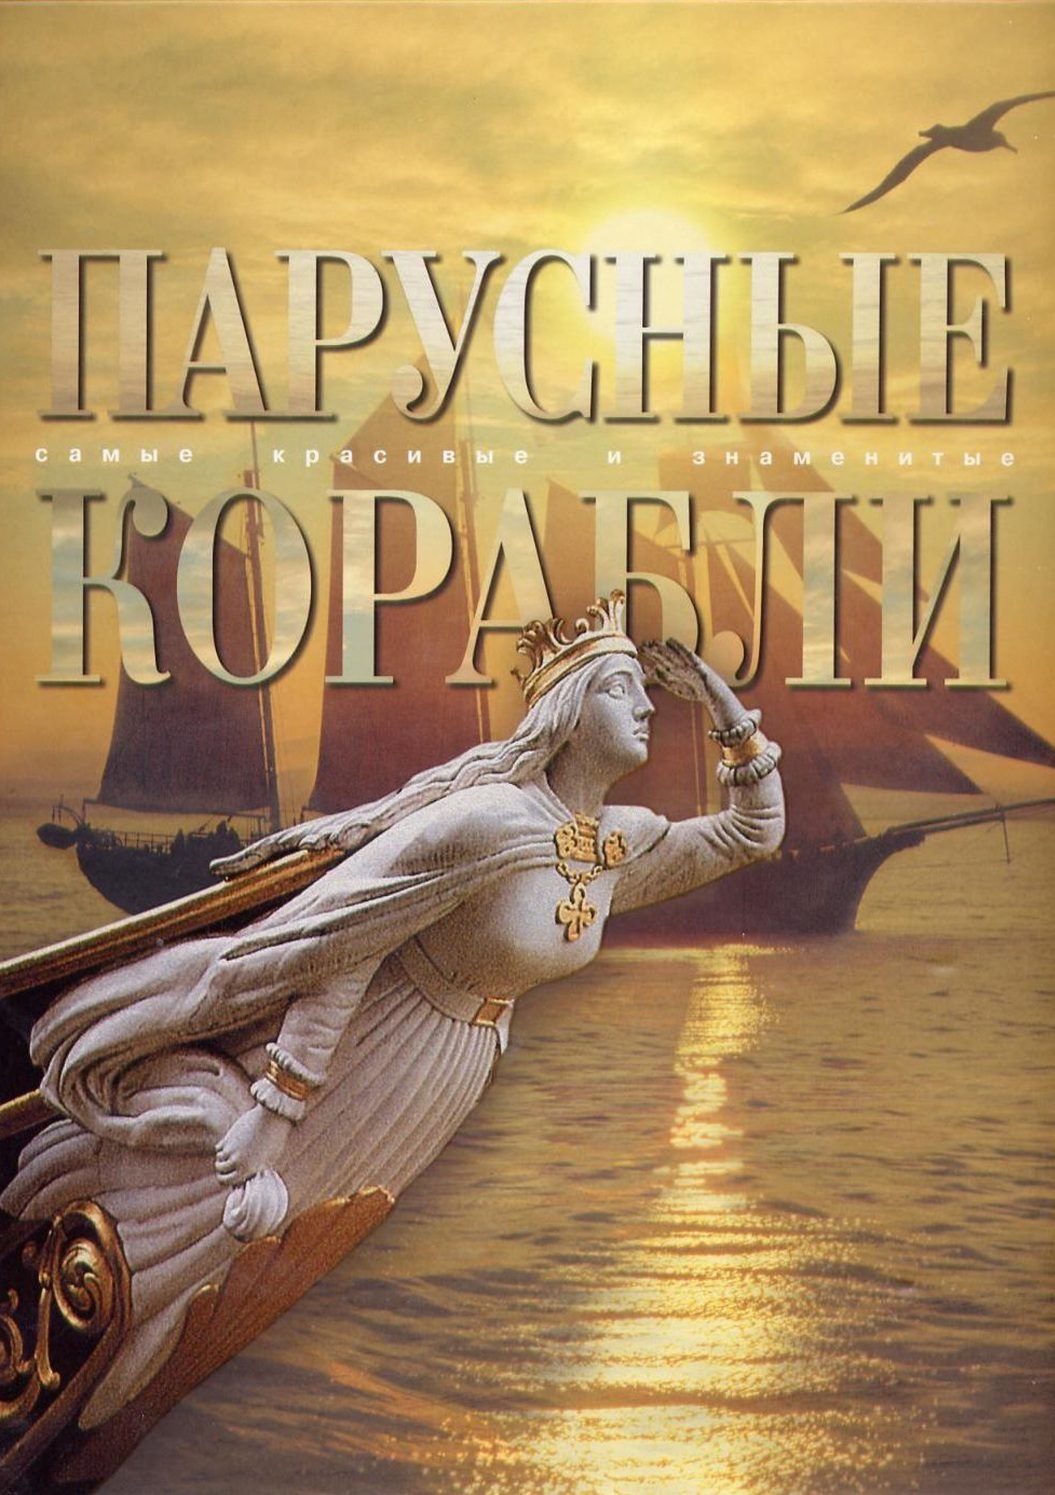 Книга Балакин, Масляев. "Самые красивые и знаменитые парусные корабли"